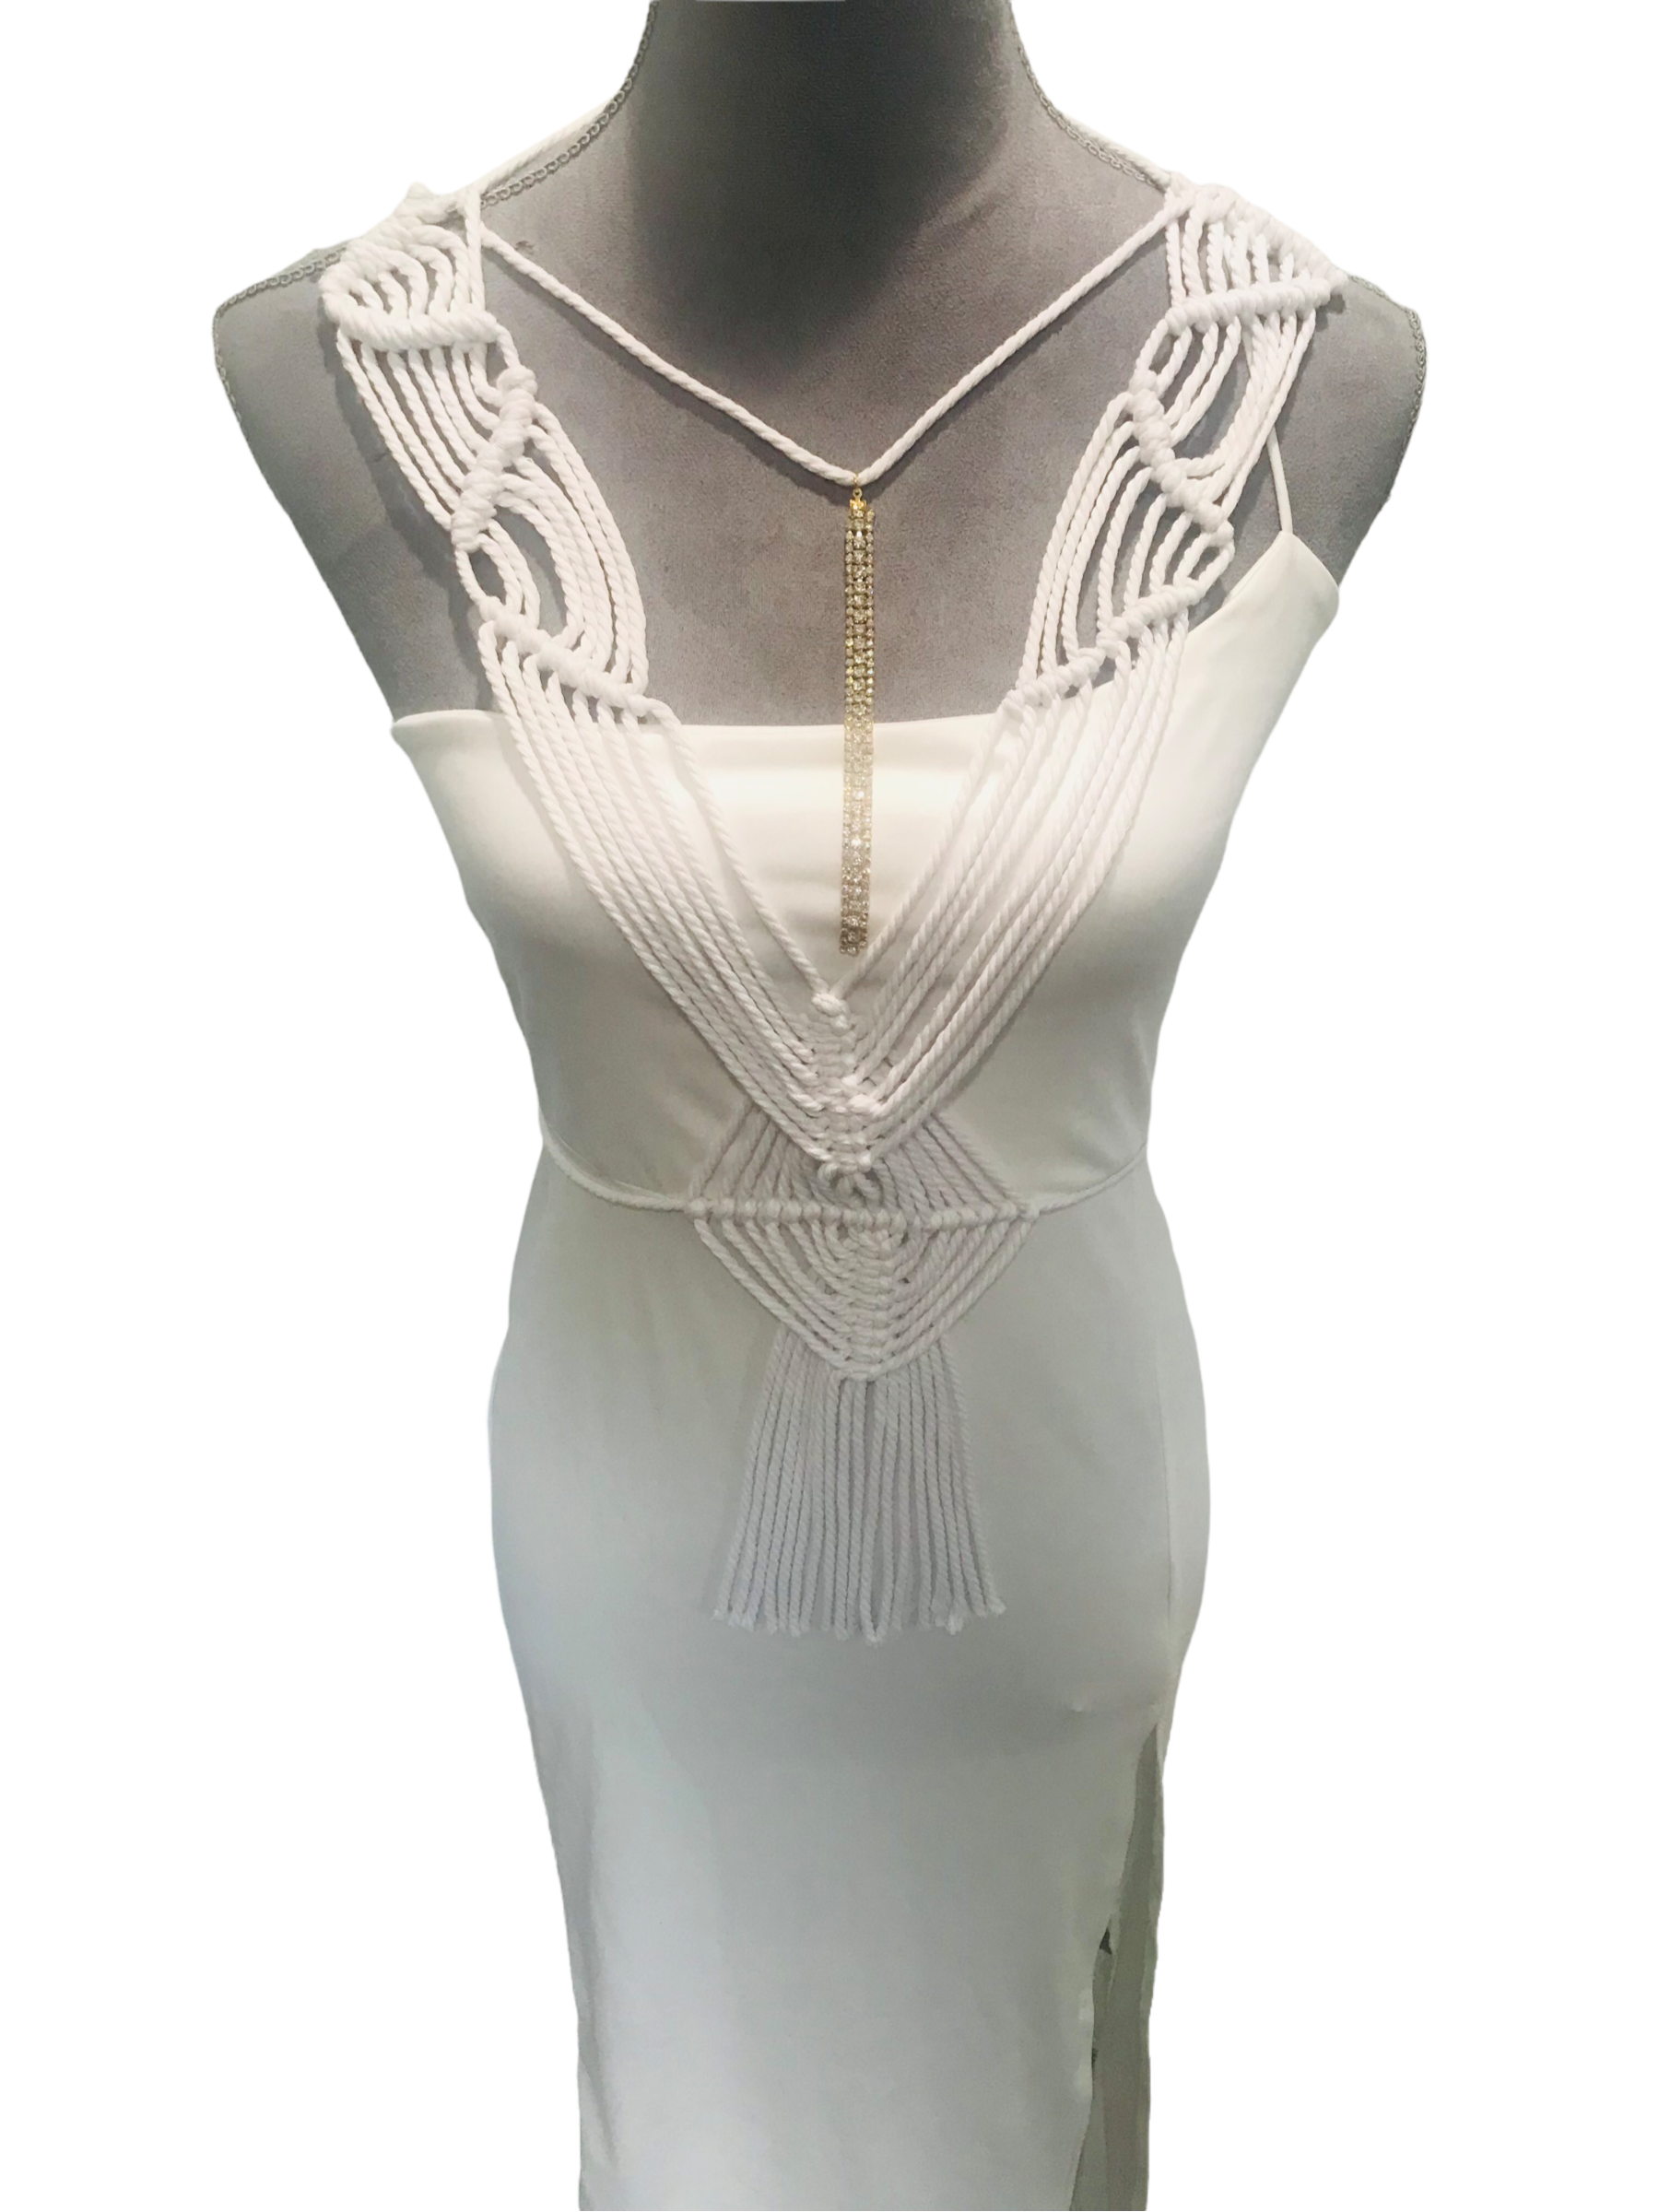 White Macrame dress overlay – Yahinas